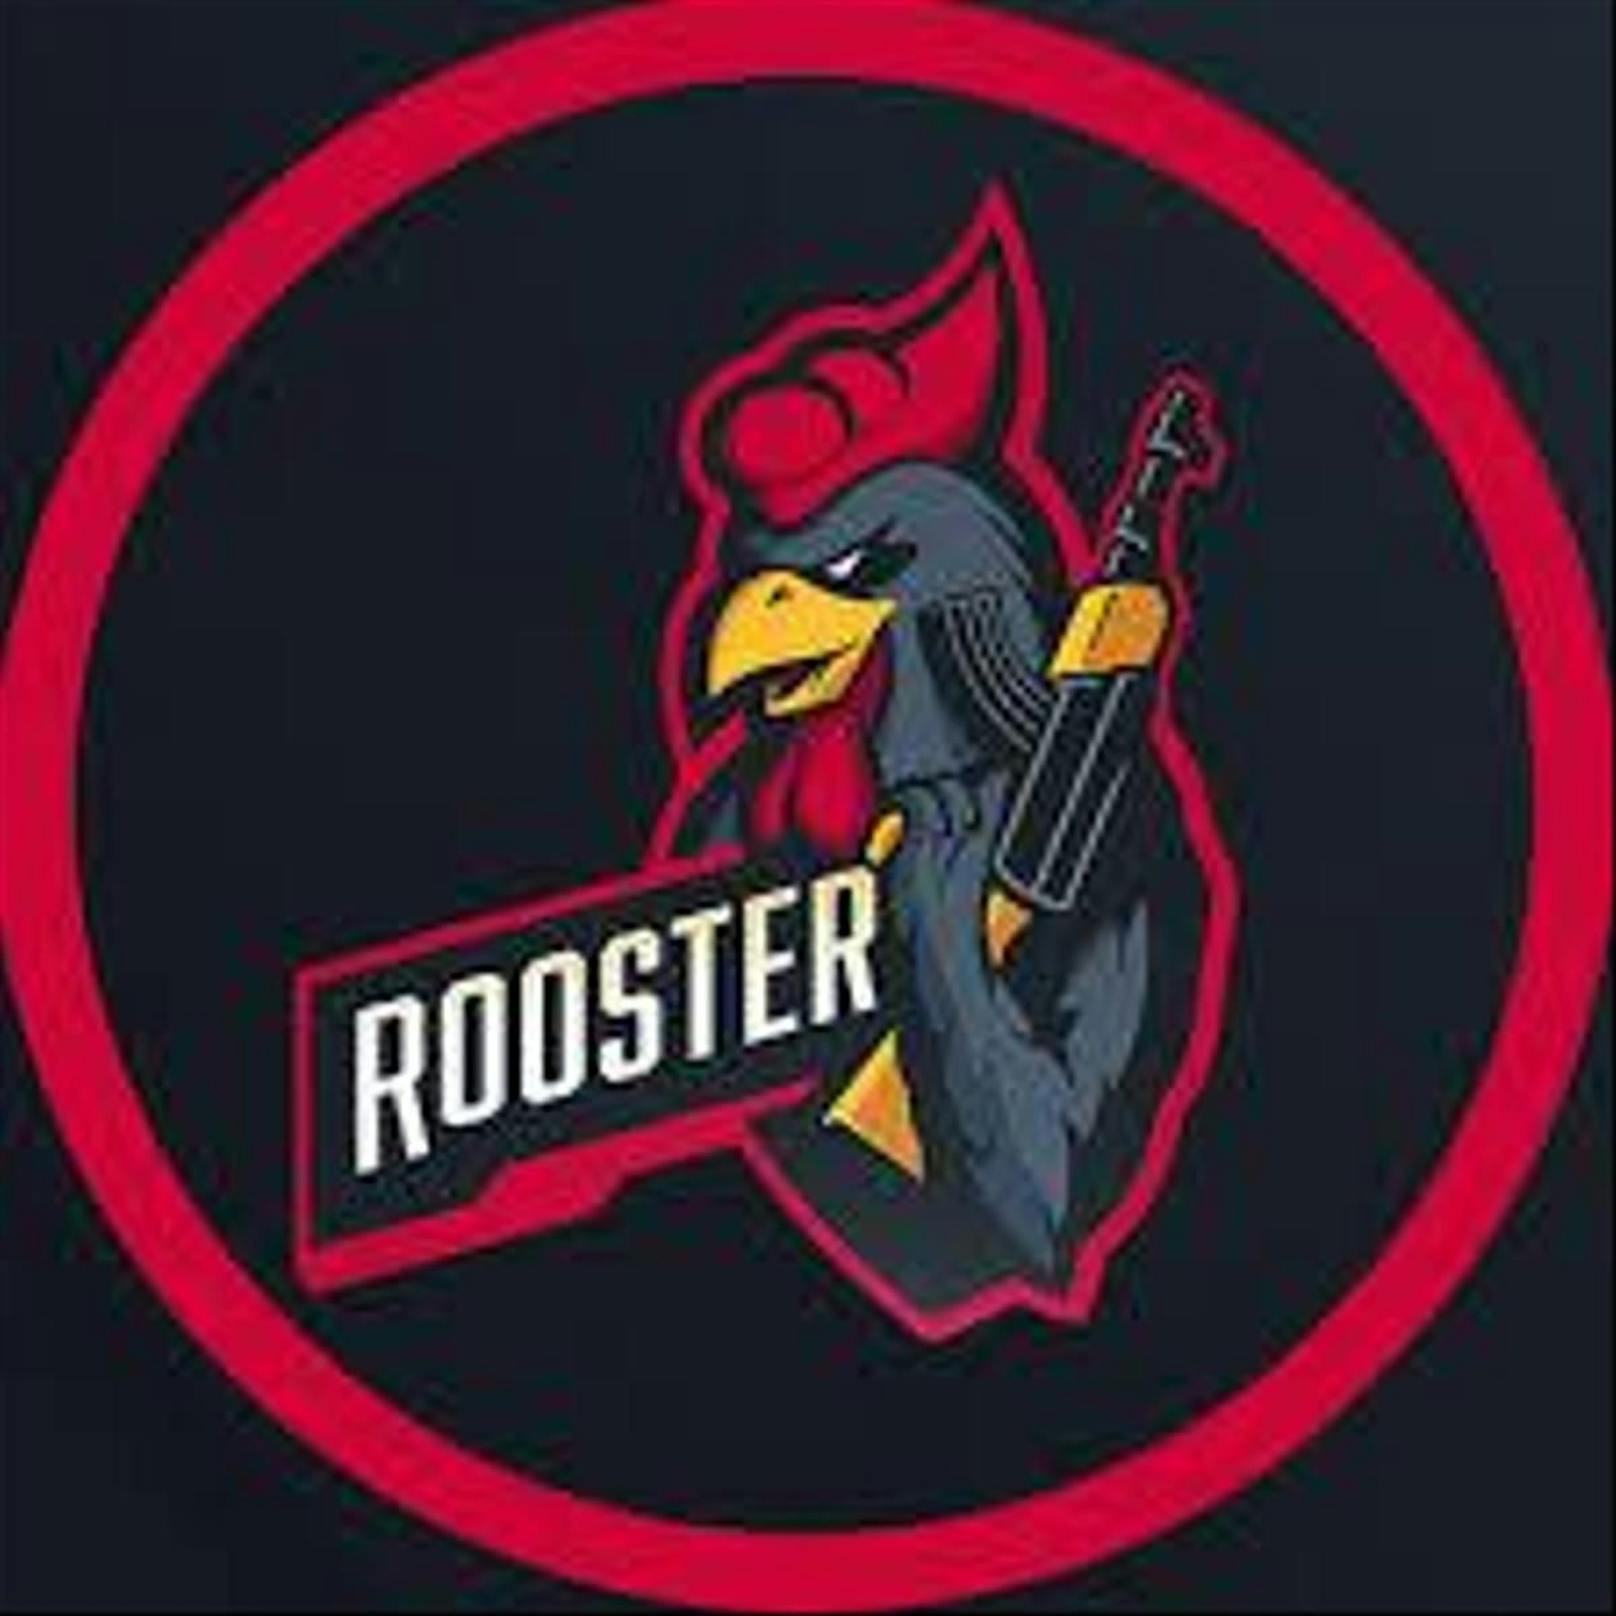 Sein Team "Rooster" verliert seinen Spot am "CS:GO"-Turnier Dreamhack, und der Spieler wird für ein Jahr gebannt.